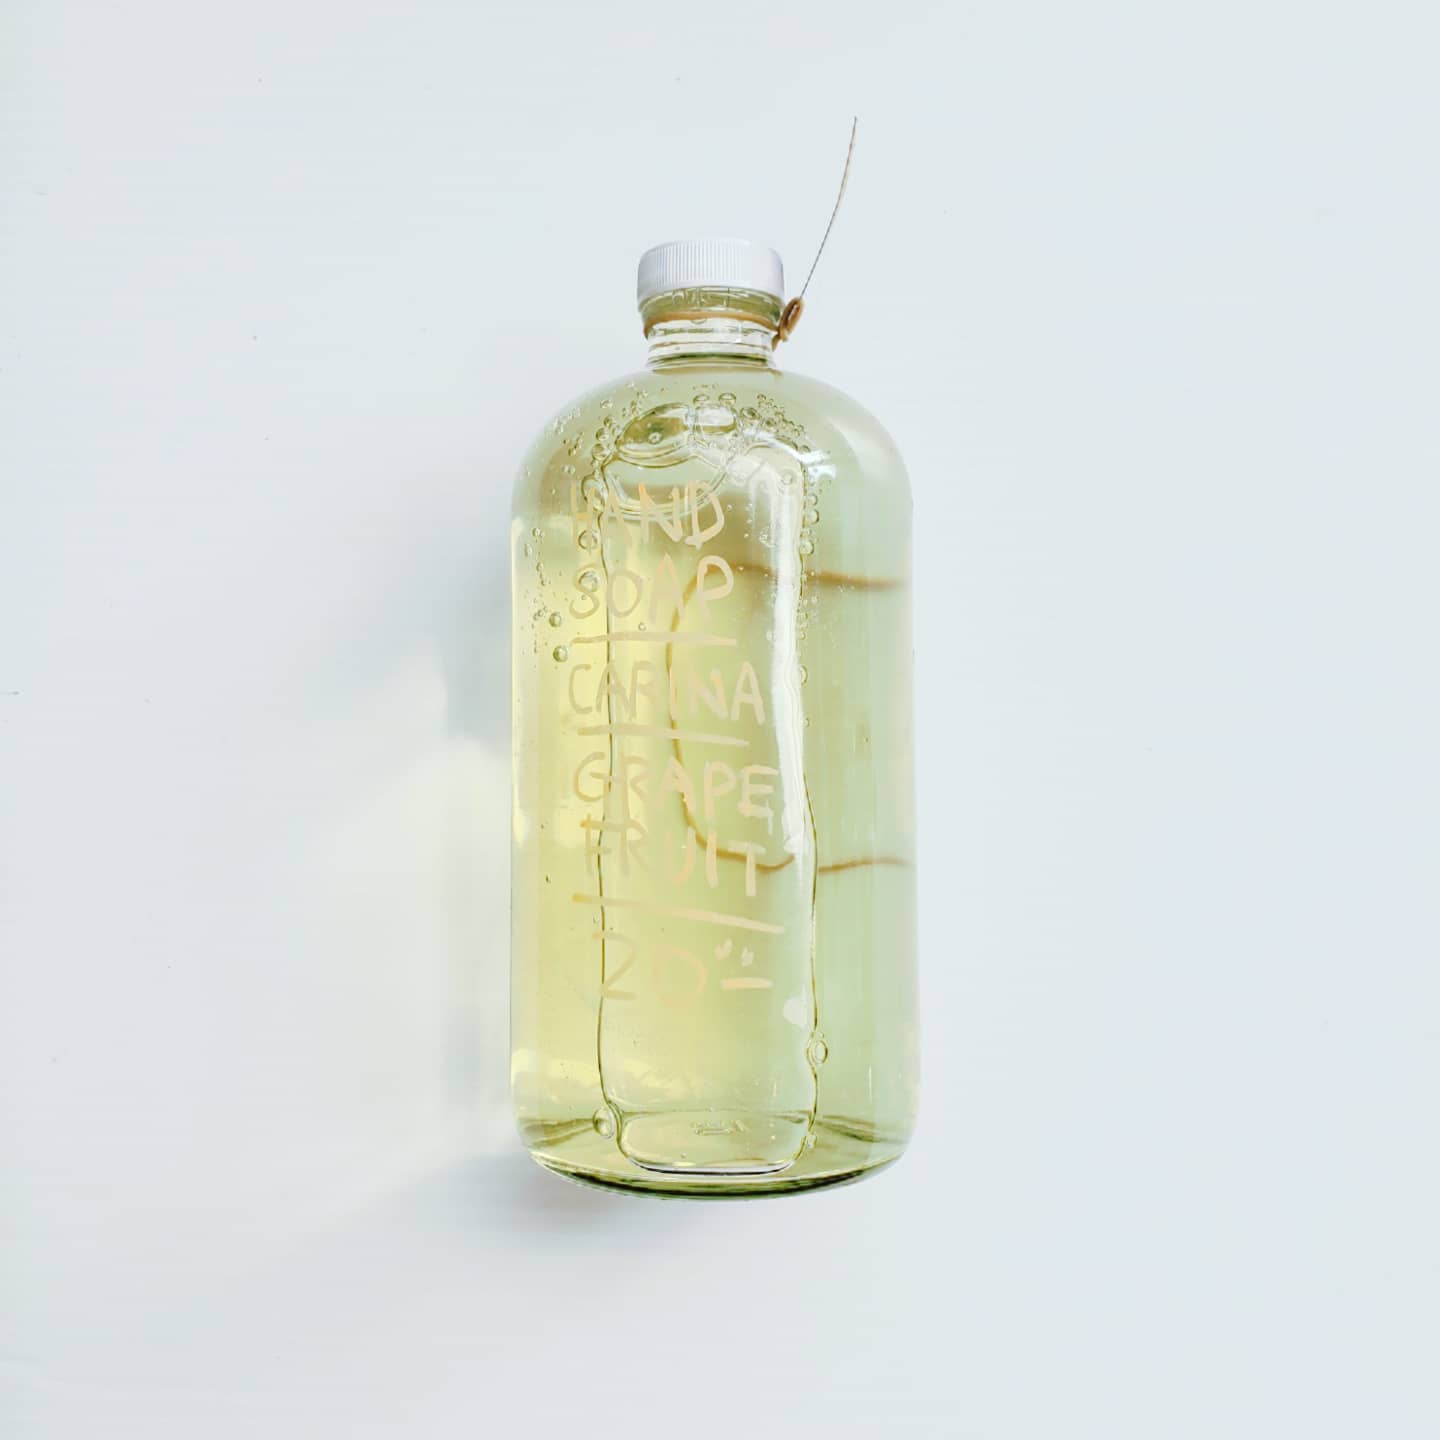 Carina Organics Hand Soap - 1L